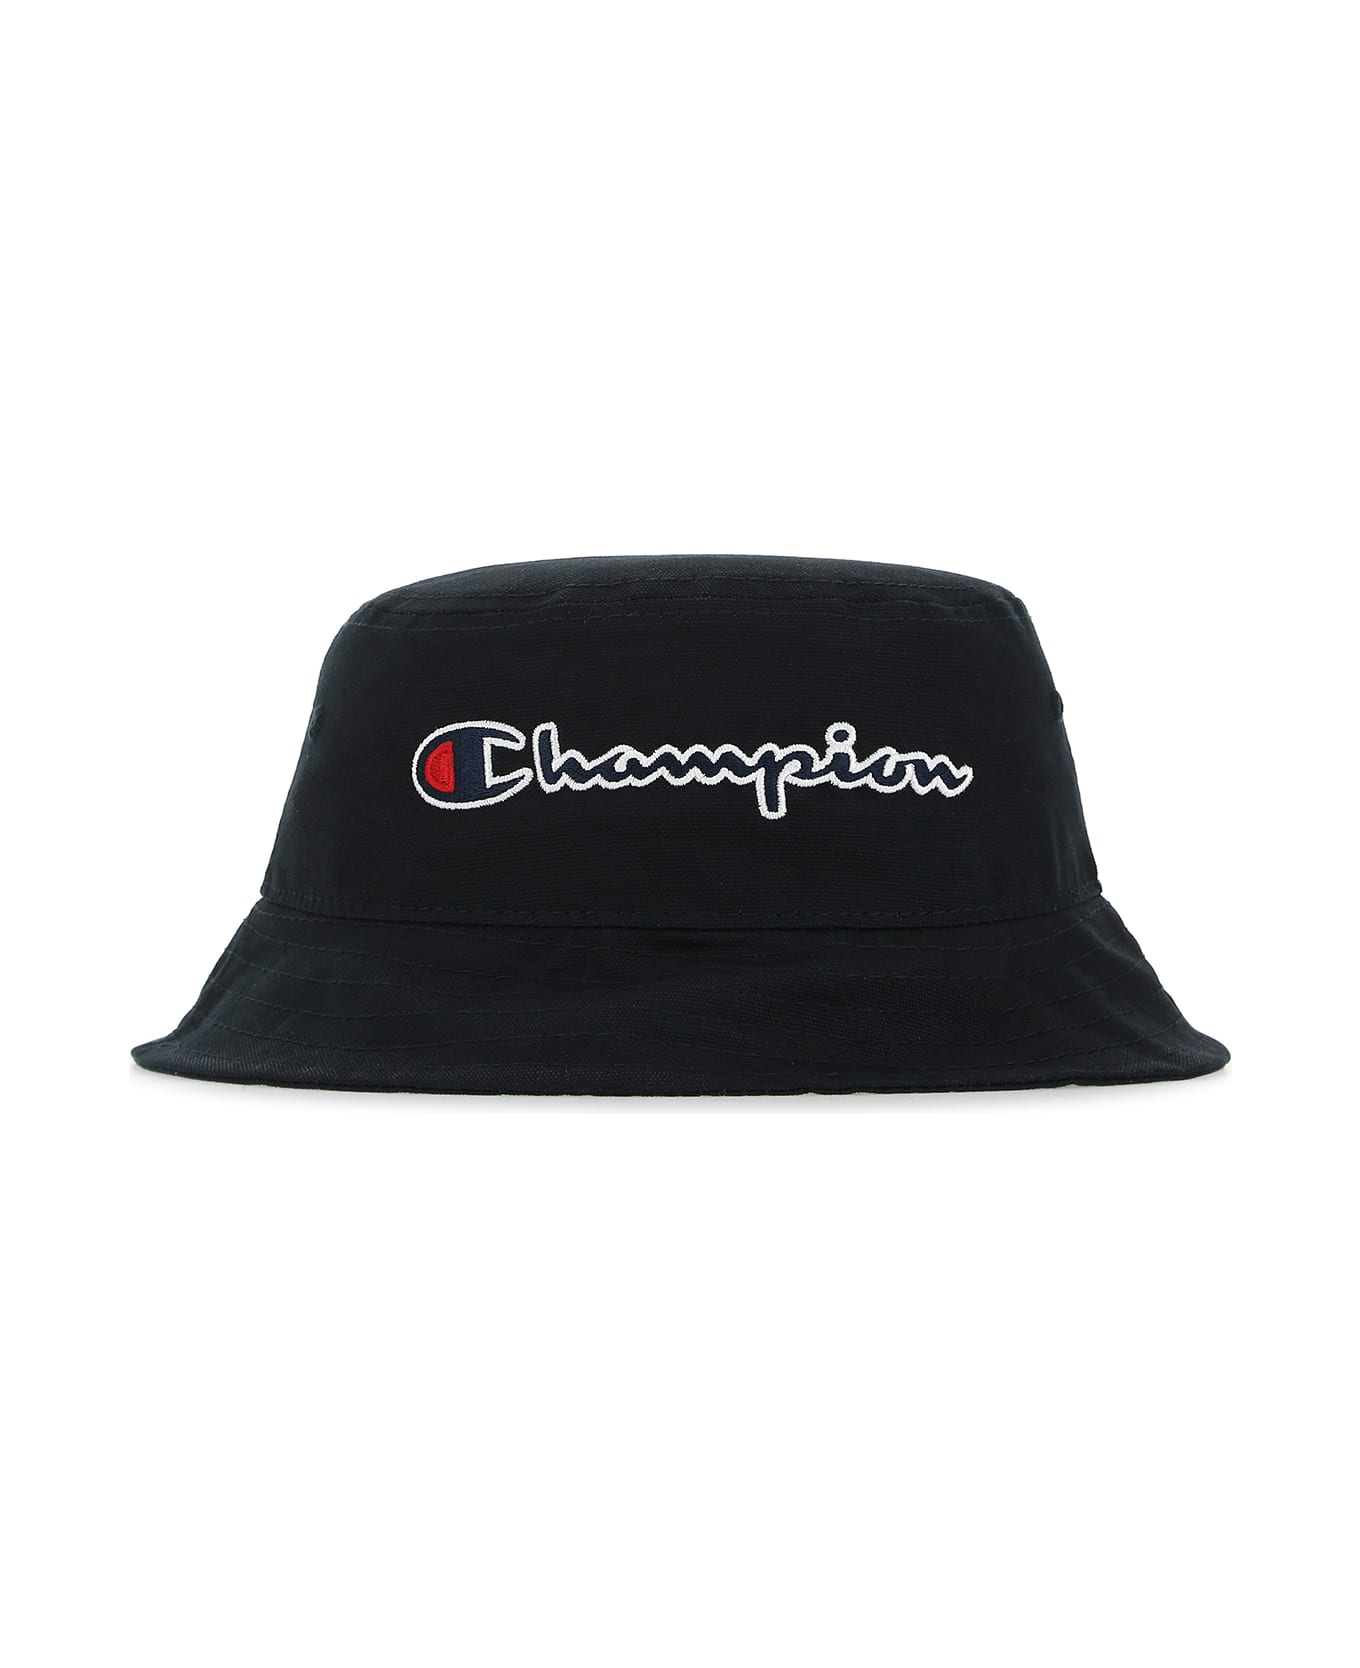 Champion Black Cotton Bucket Hat - KK001